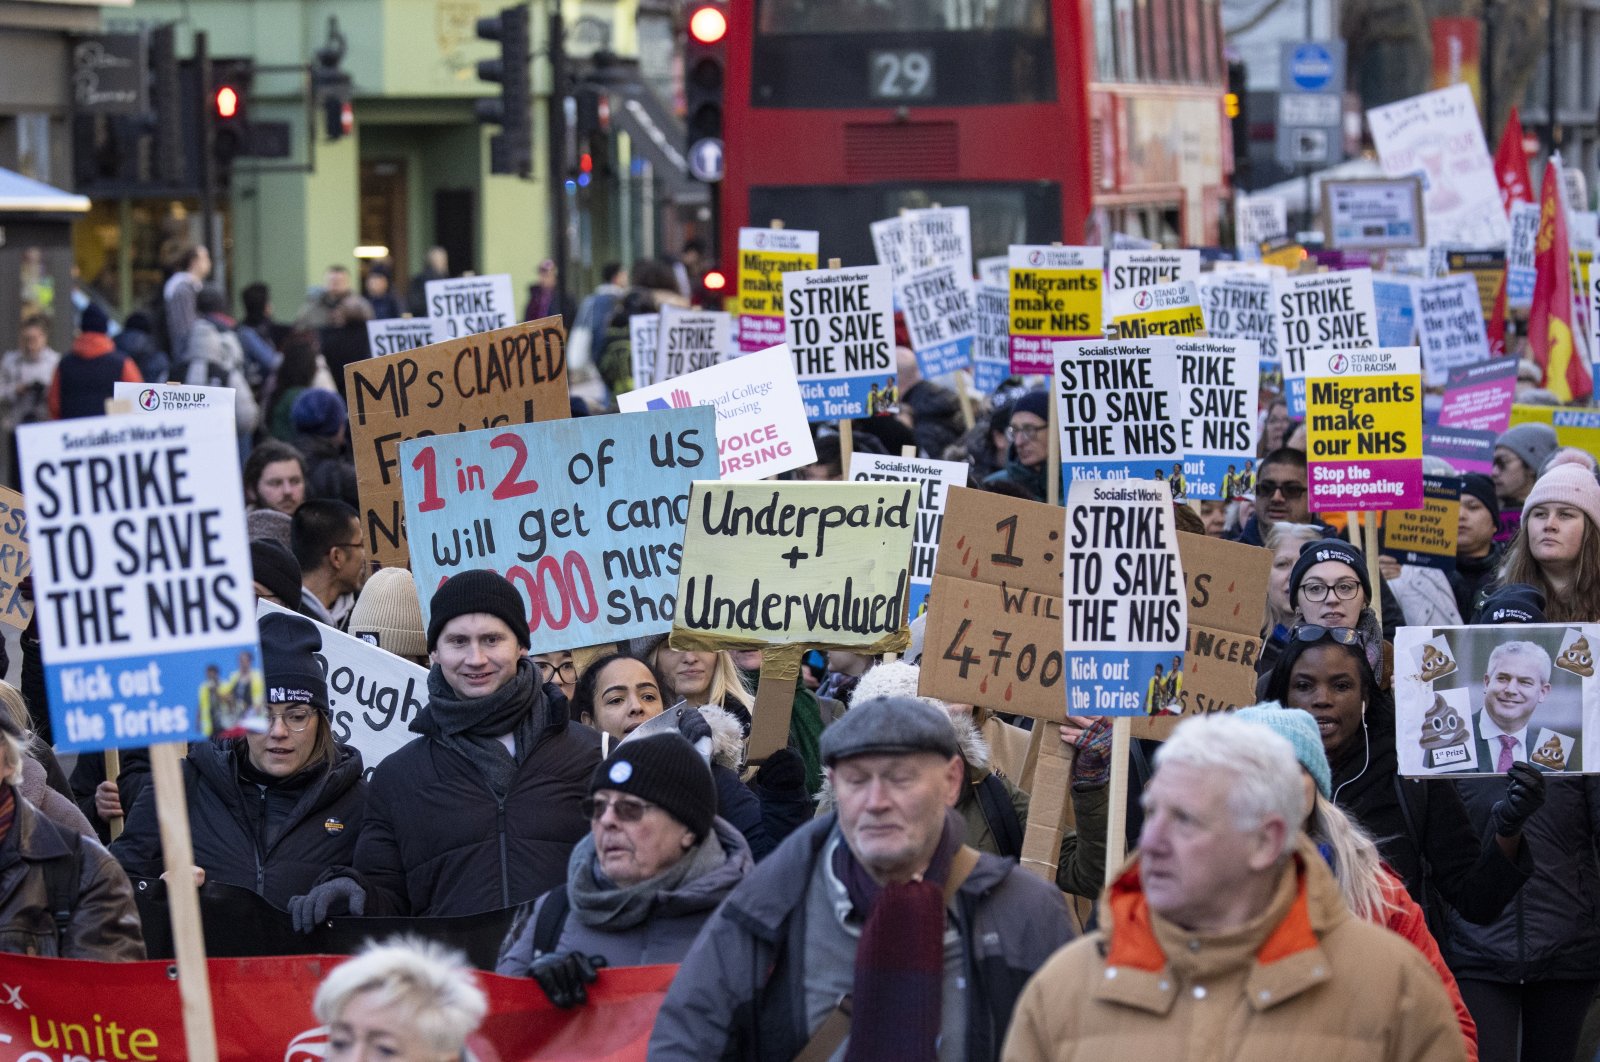 Inggris menetapkan gelombang pemogokan baru atas perselisihan gaji yang sedang berlangsung